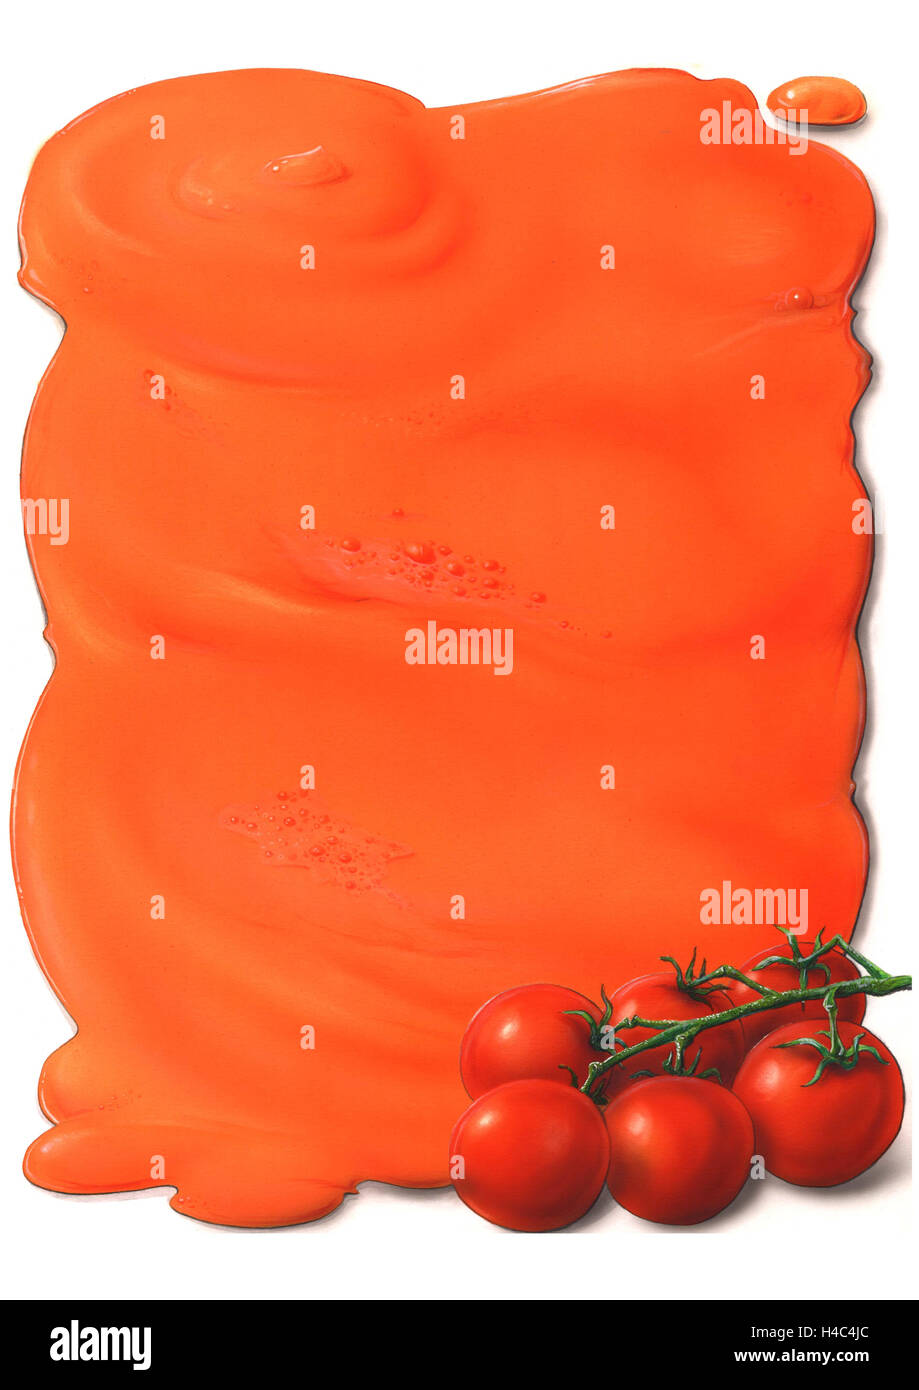 Tomato sauce with tomato shrub Stock Photo